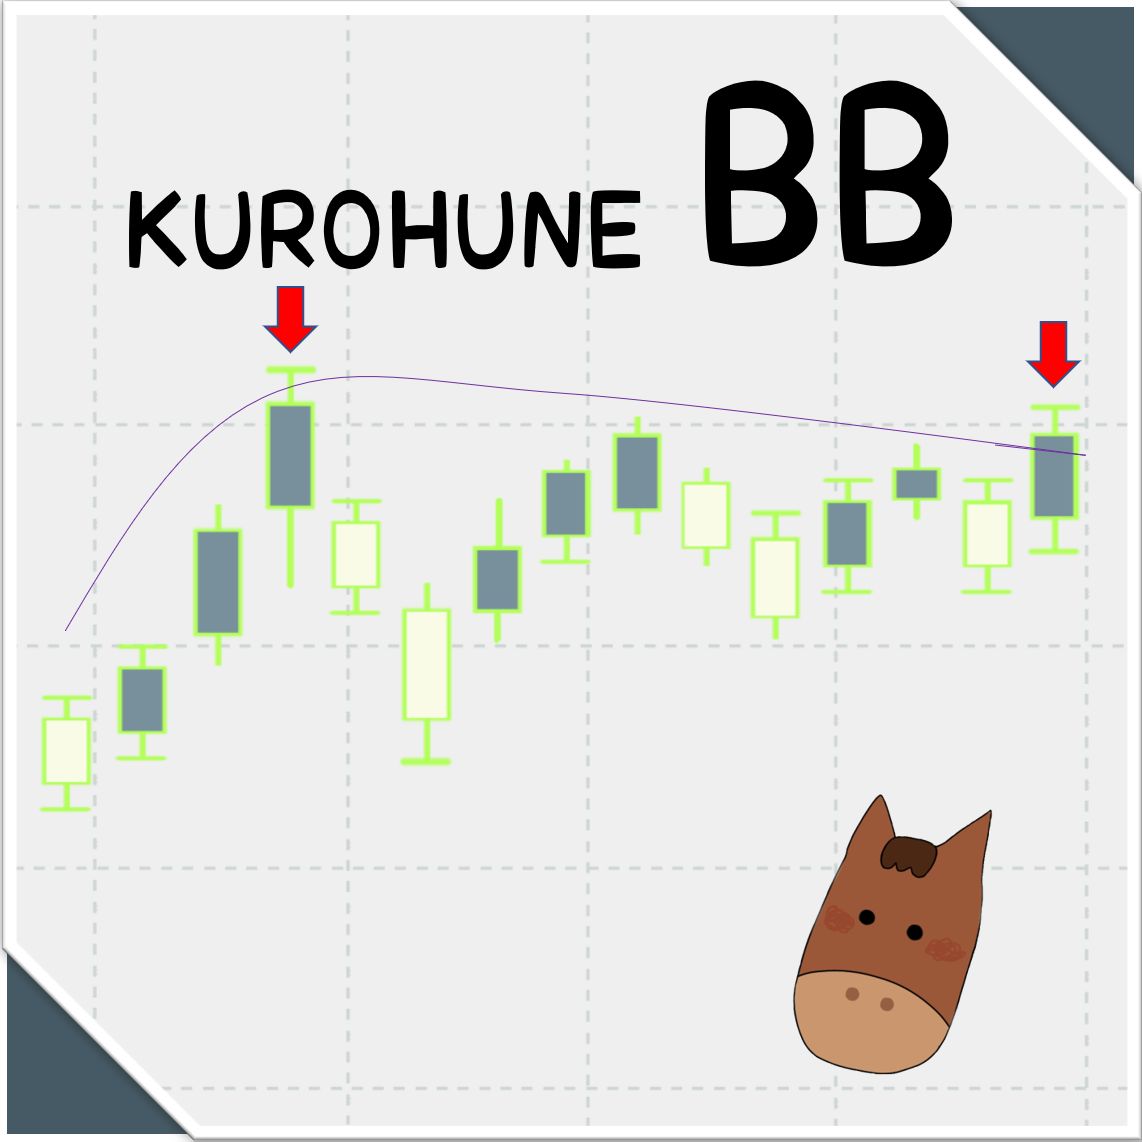 KUROHUNE_BB インジケーター・電子書籍